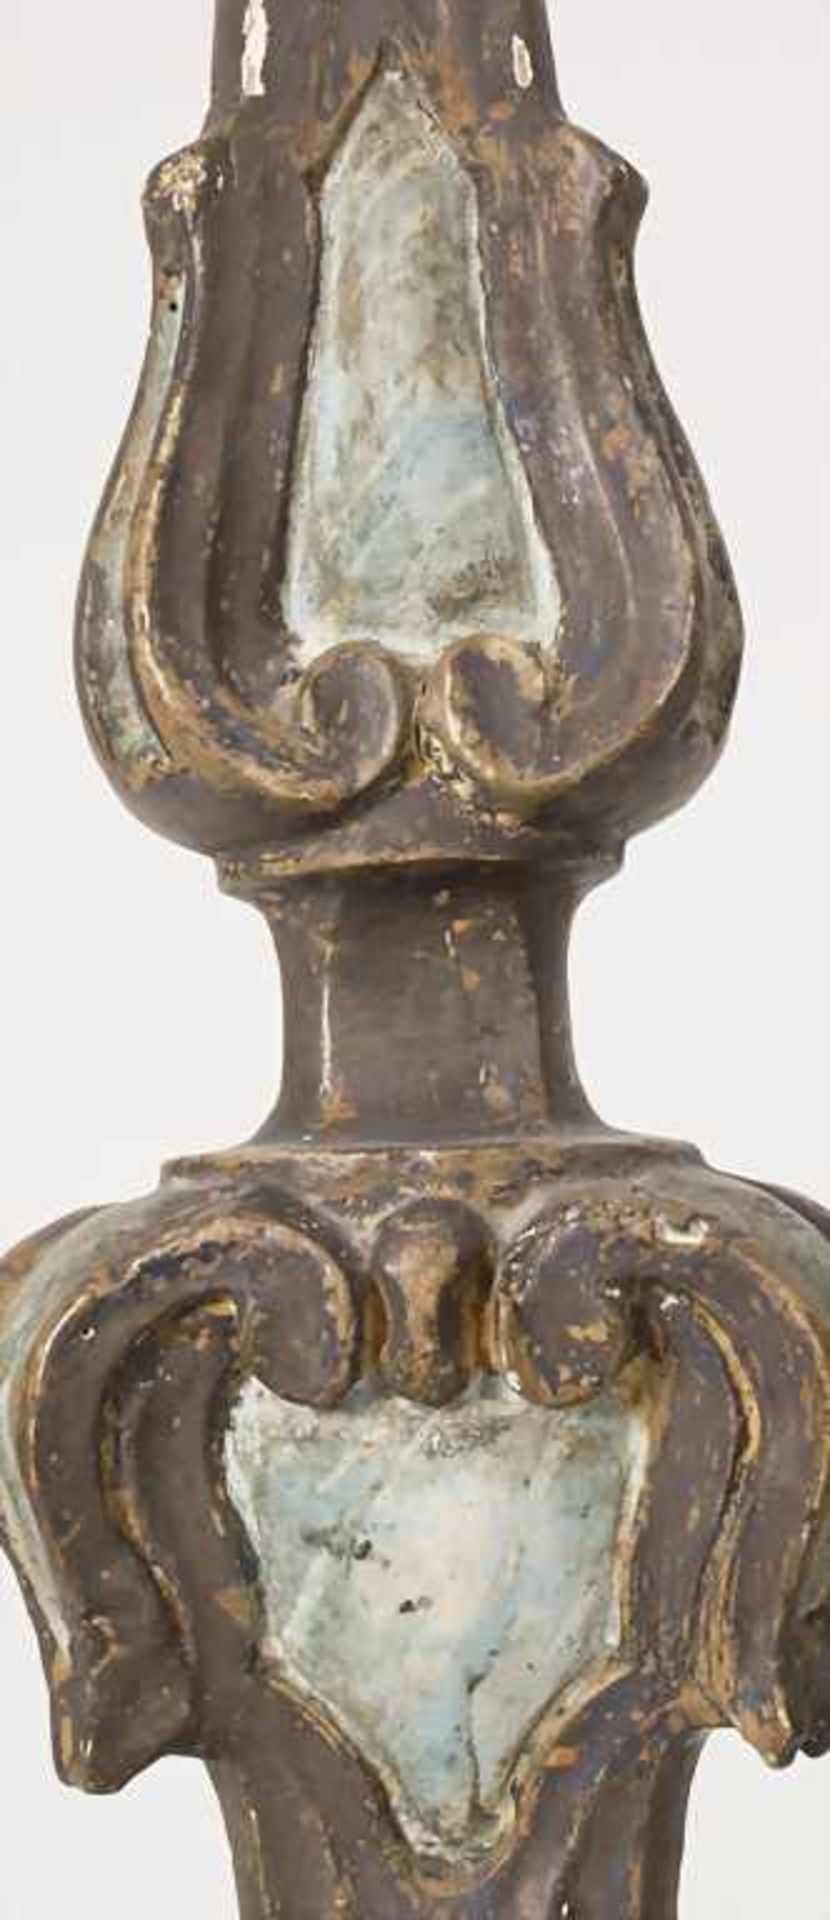 Altarleuchter / An altar candlestick, süddeutsch 18. Jh.Material: Holz, geschnitzt, farbig - Bild 11 aus 13